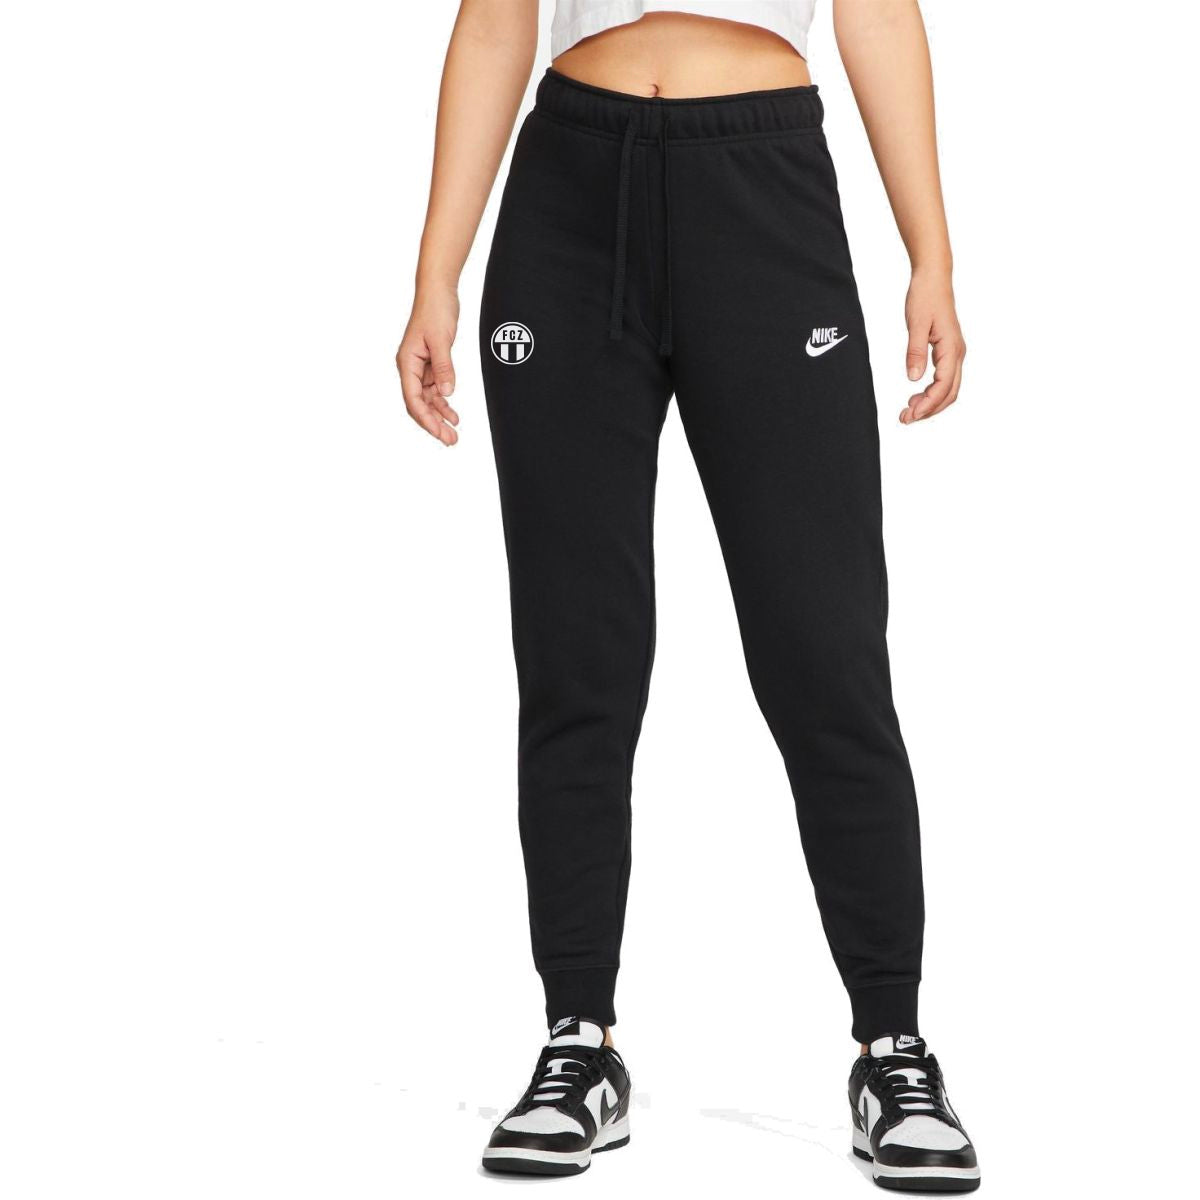 Hose lang Nike schwarz Frauen